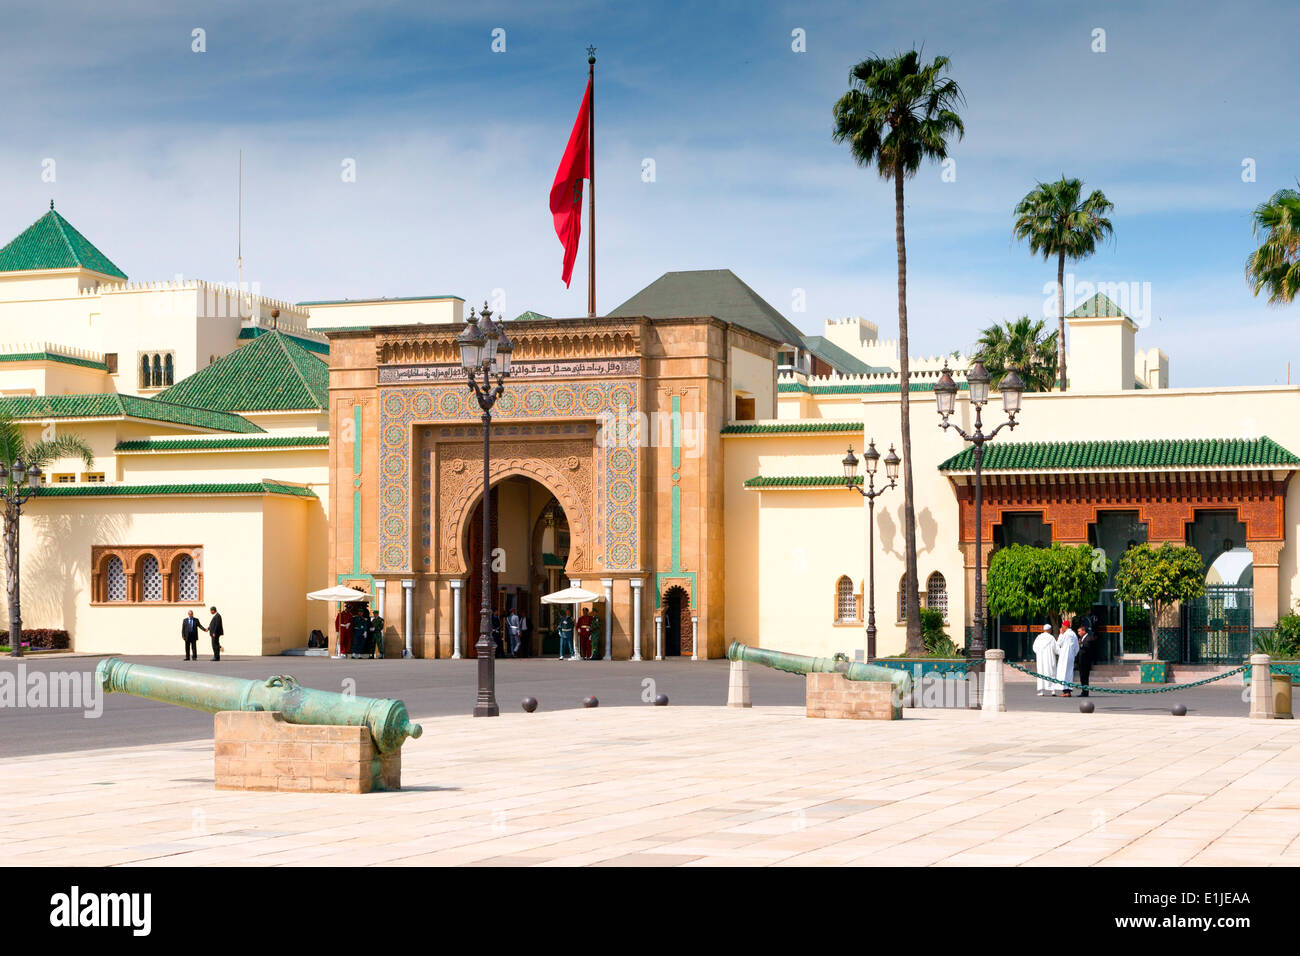 Avis de Dar El Makhzen, le palais royal de Rabat, au Maroc. Banque D'Images